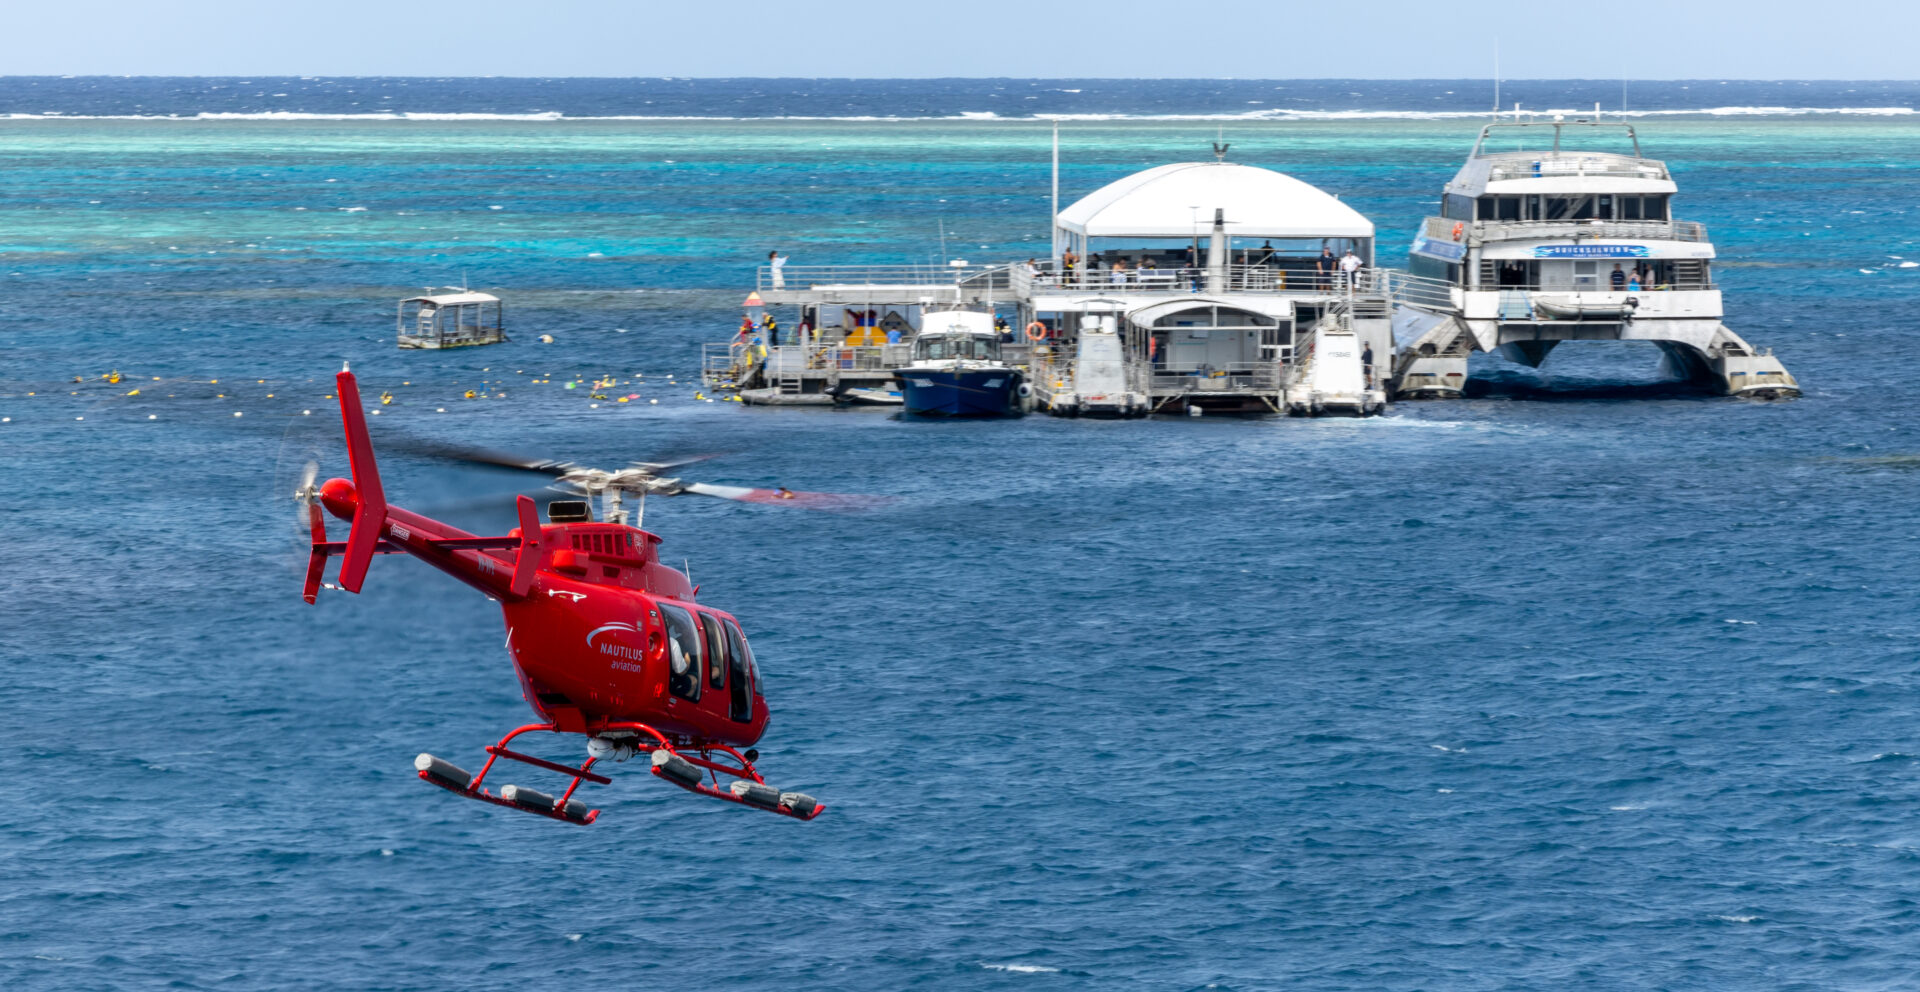 只有银梭号（Quicksilver）能带您前往位于著名的阿金考特礁（Agincourt Reef）上的珊瑚礁活动平台——这是一个位于澳大利亚大陆架边缘的壮观带状珊瑚礁。选择与珊瑚礁观光直升机飞行相结合的套餐，从空中和水下探索大堡礁的梦幻之美。从凯恩斯出发，前往道格拉斯港（Port Douglas），沿途经过澳大利亚风景如画的公路——大堡礁海岸自驾线路（Great Barrier Reef Drive）。